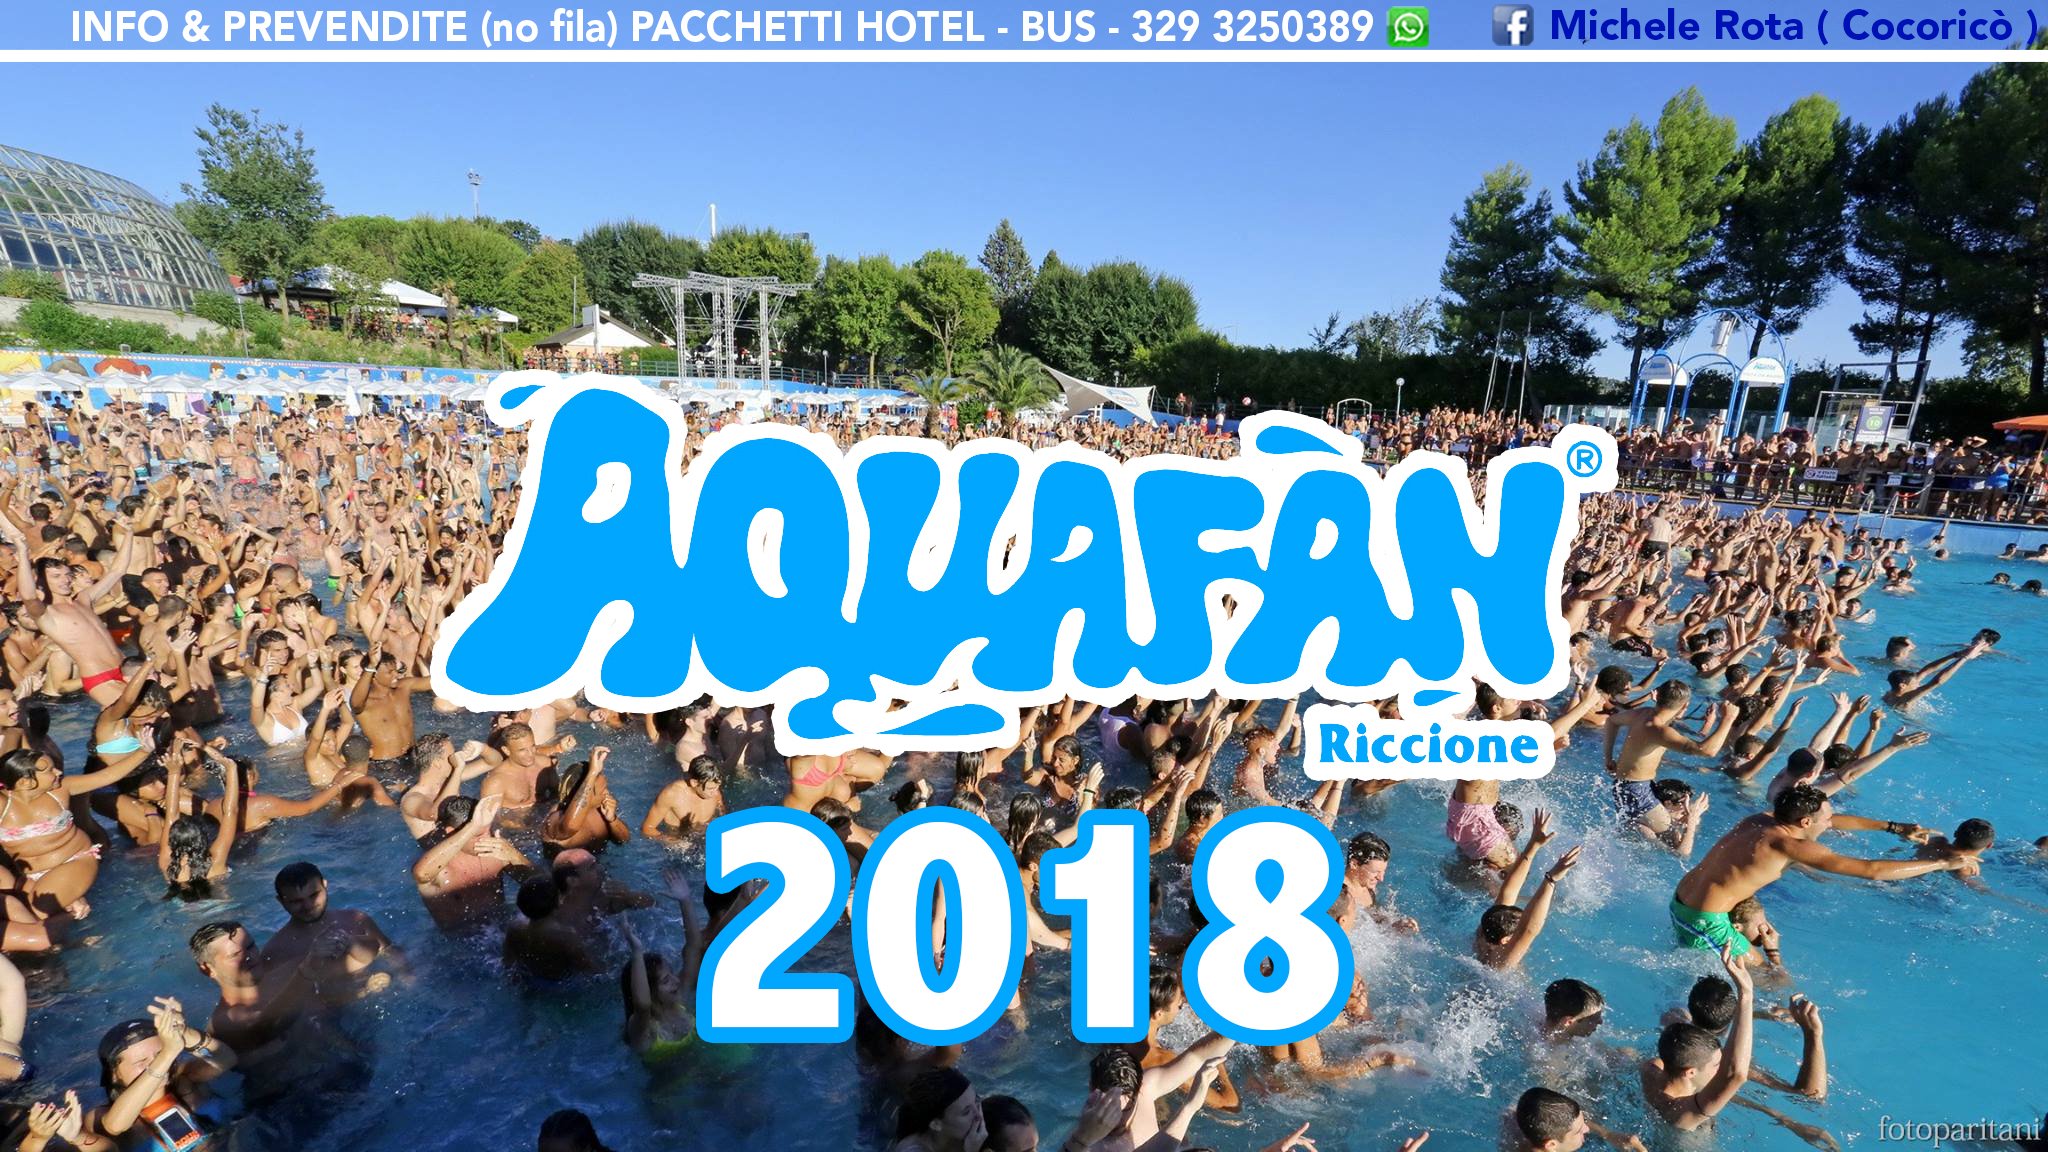 aquafan schiuma party 2018 night & day